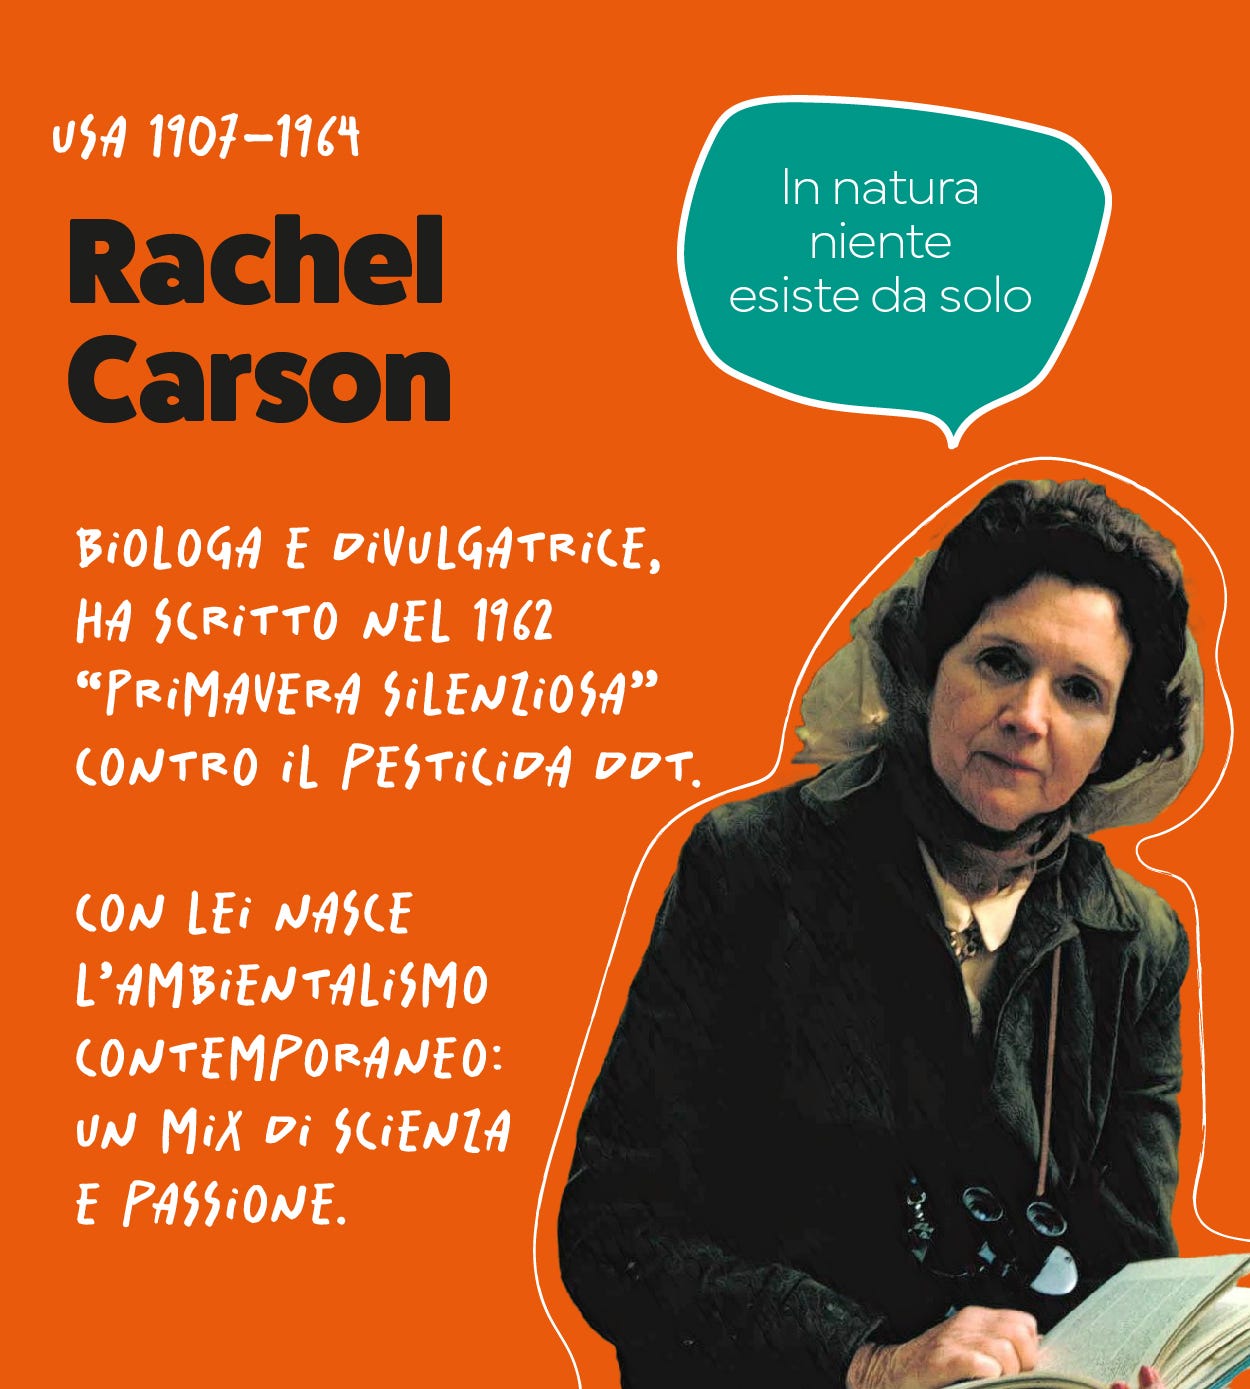 Rachel Carson. Biologa e divulgatrice, ha scritto nel 1962 "Primavera silenziosa" contro il Ddt. Con lei nasce l'ambientalismo contemporeaneo: un mix di scienza e passione